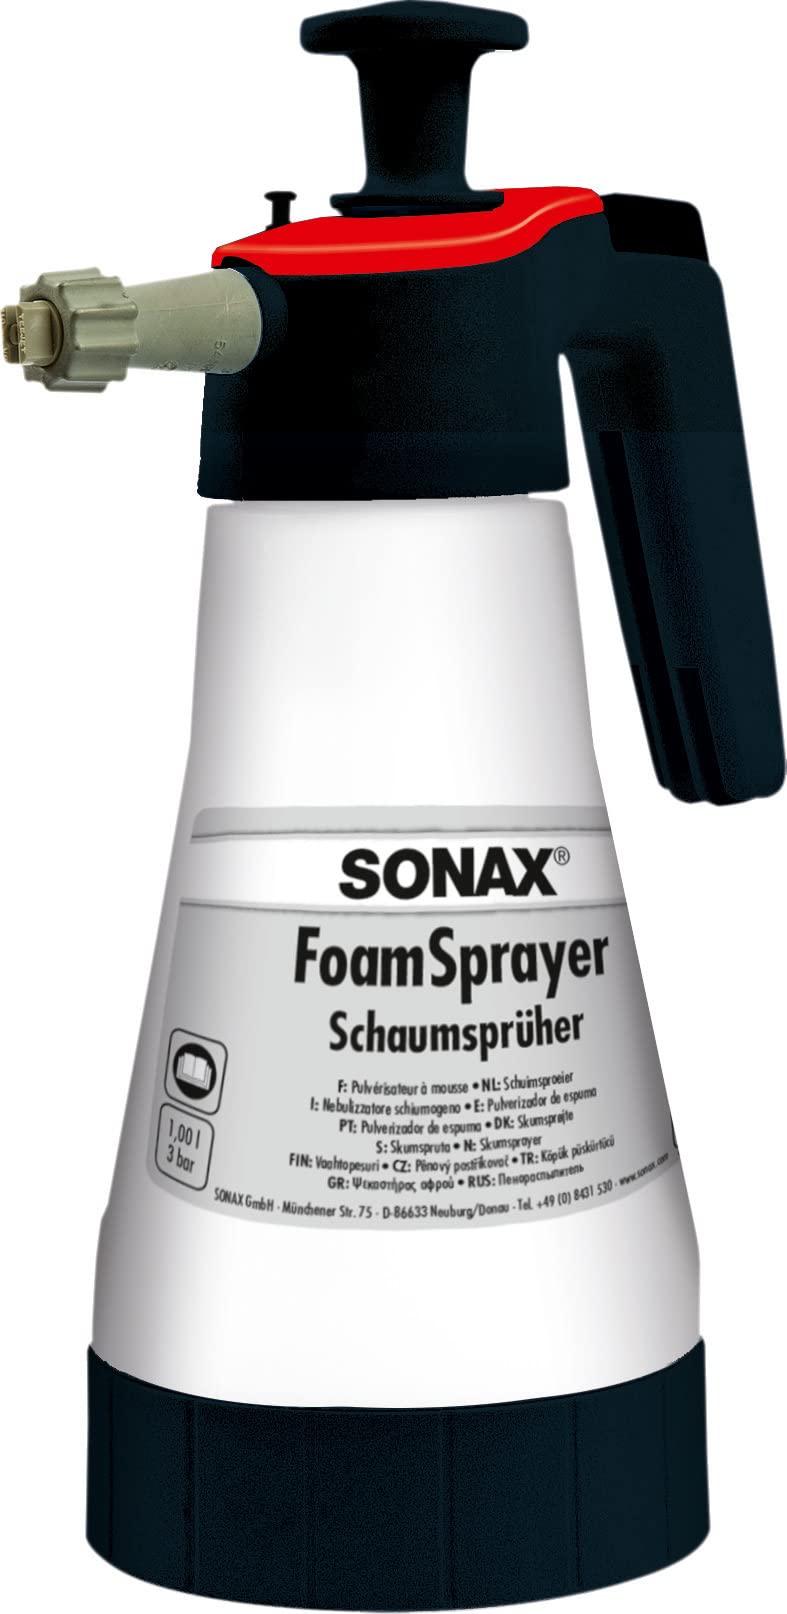 SONAX FoamSprayer 1 Liter (1 Stück) Schaumsprüher für ein gleichmäßiges Schaumbild und ein noch gründlicheres Reinigungsergebnis, Art-Nr. 04965410 von SONAX